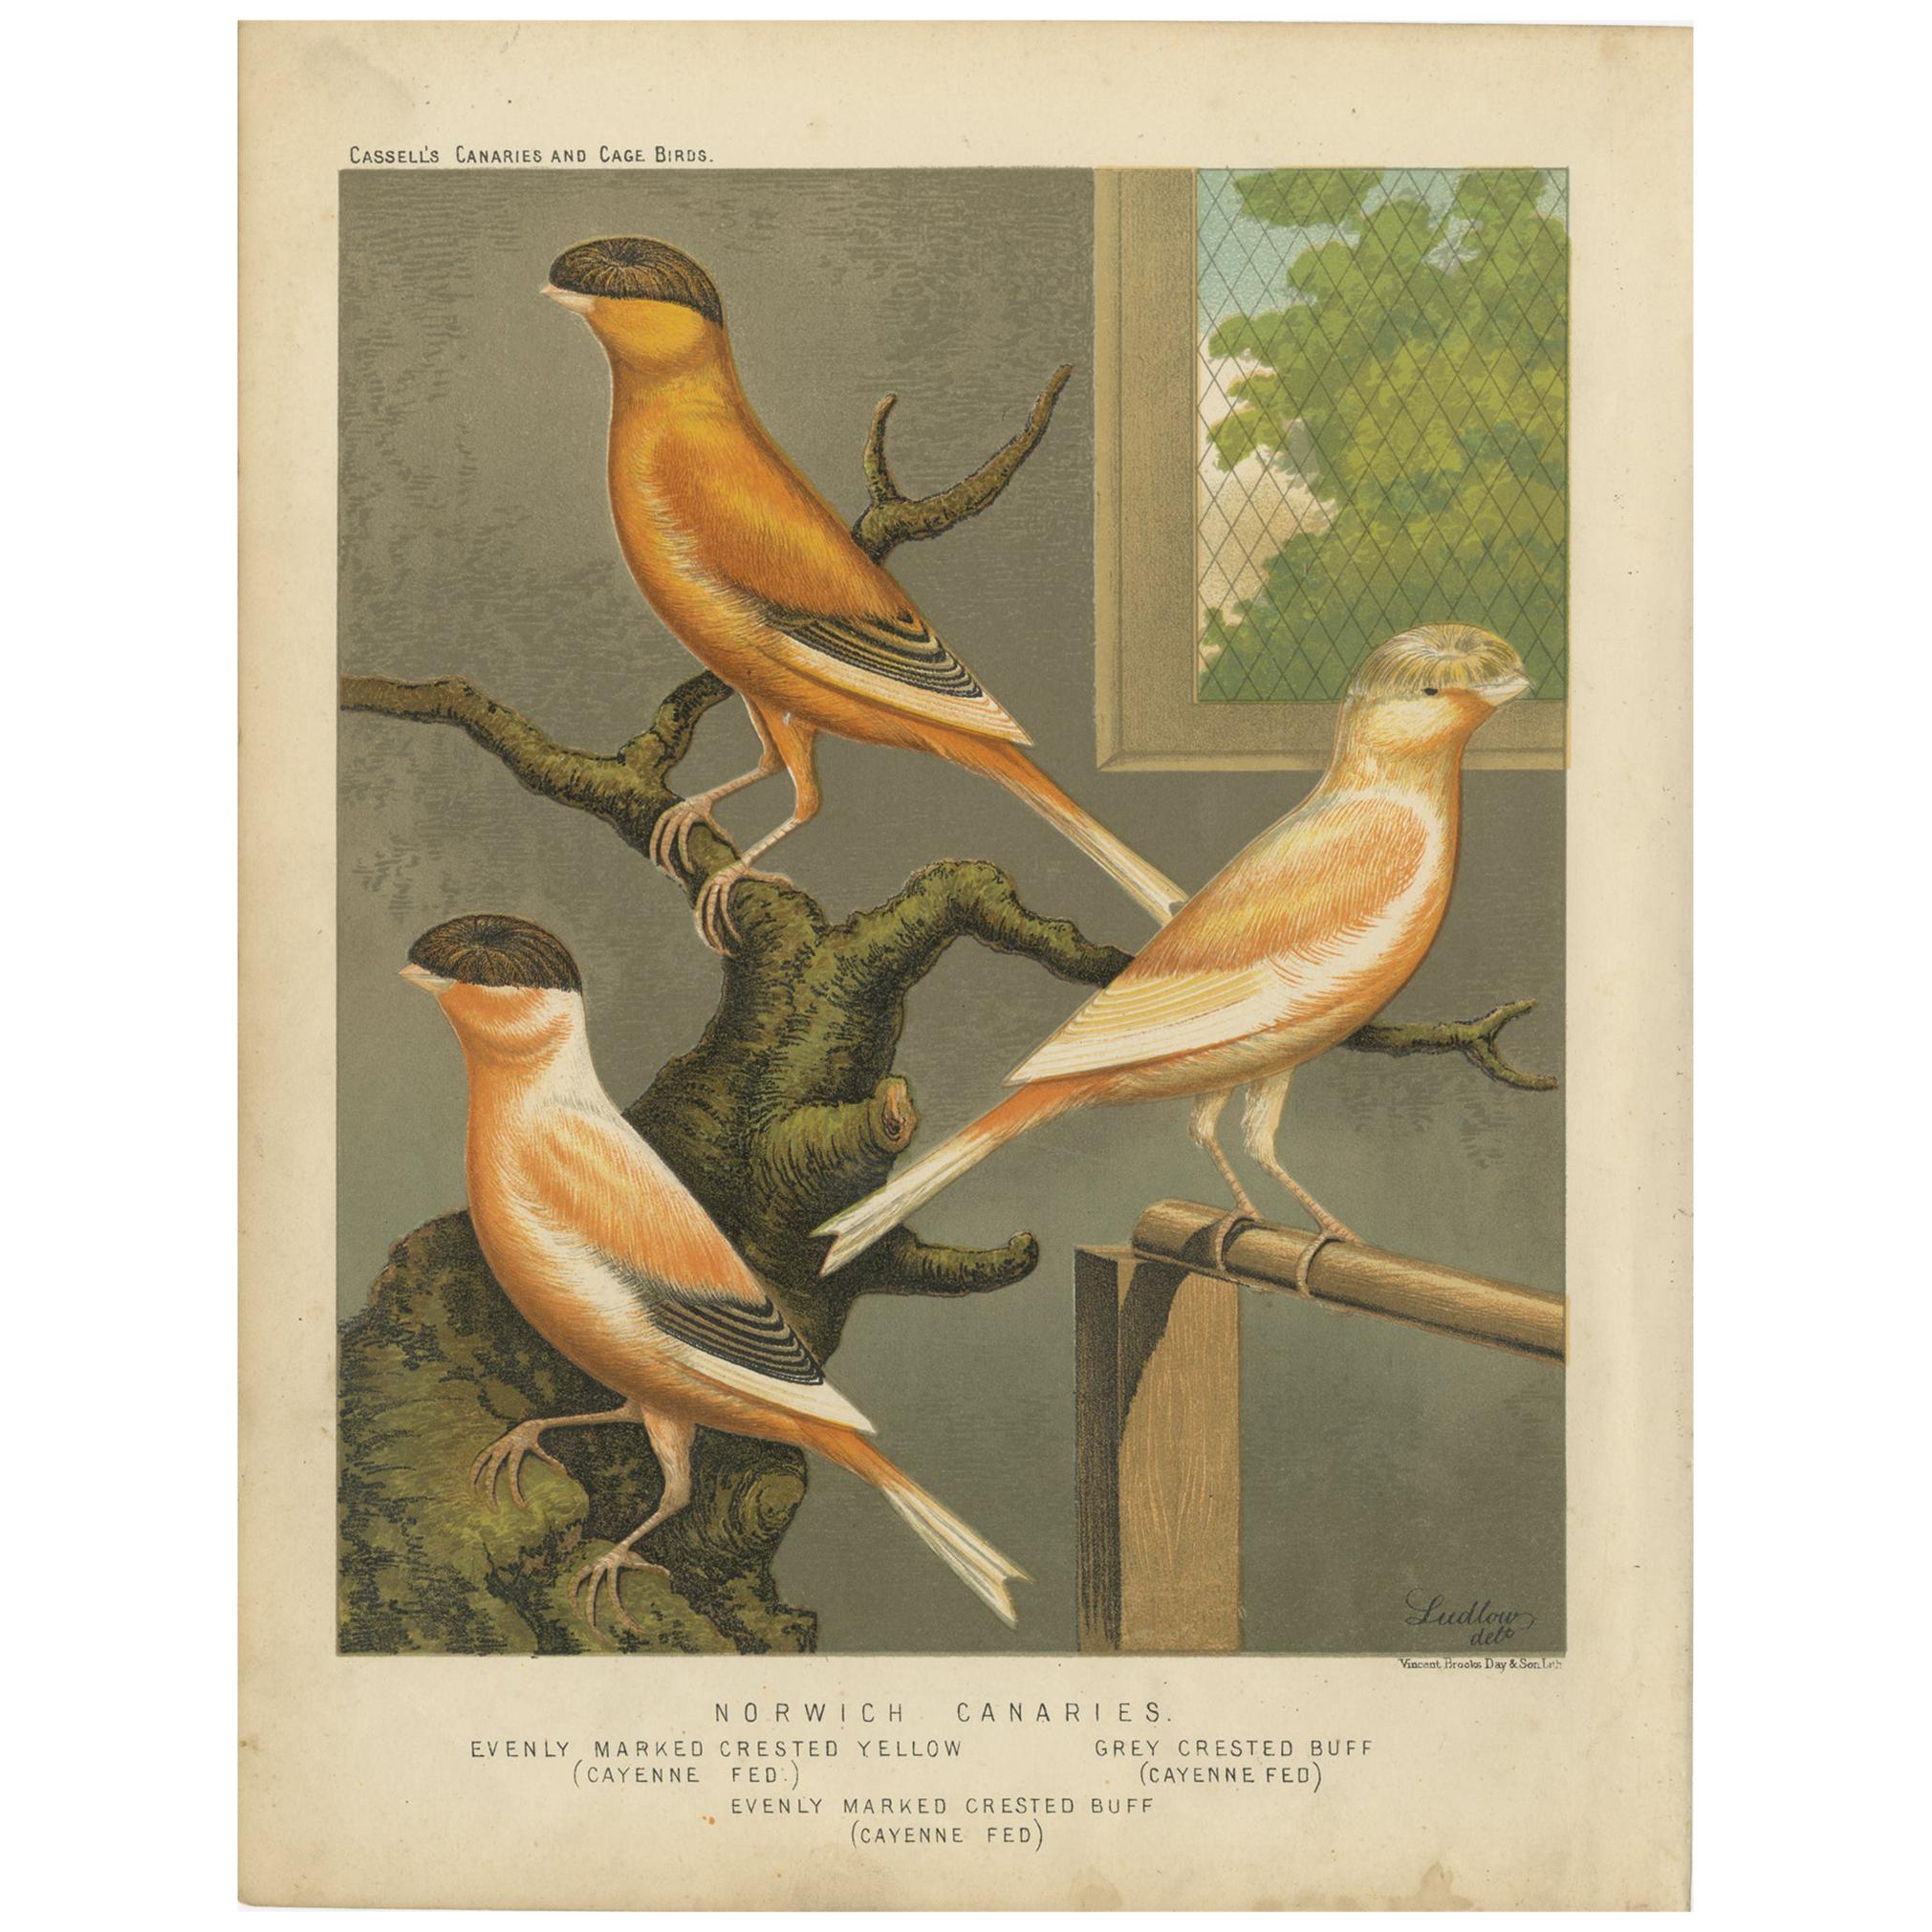 Impression oiseau ancienne des Canaries de Norwich marquée de jour et autres